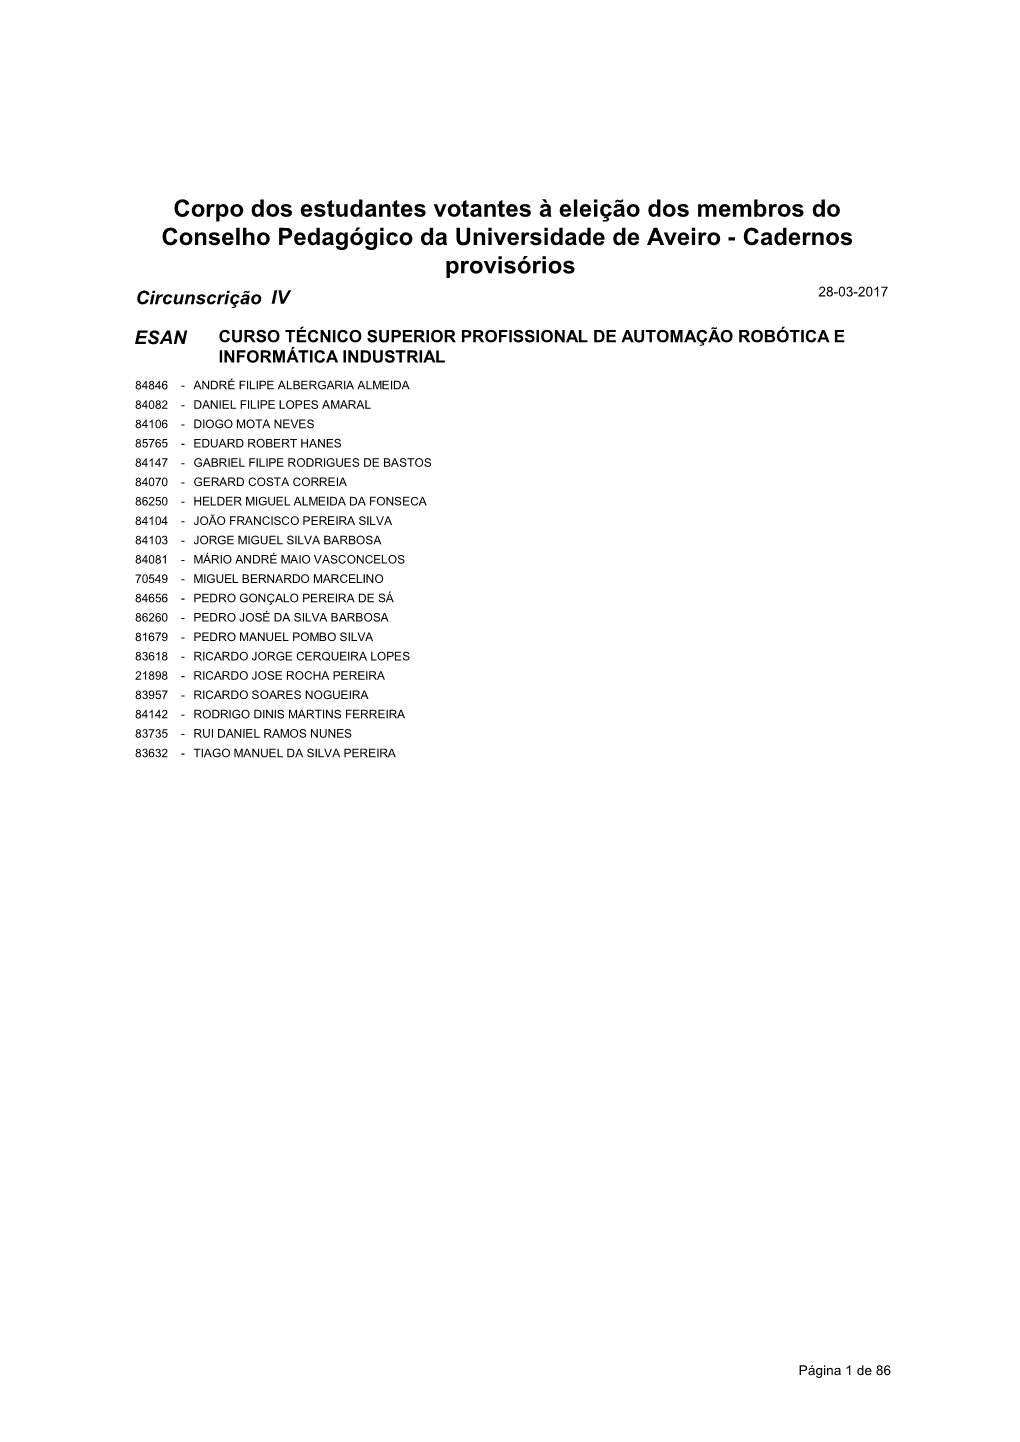 Corpo Dos Estudantes Votantes À Eleição Dos Membros Do Conselho Pedagógico Da Universidade De Aveiro - Cadernos Provisórios Circunscrição IV 28-03-2017